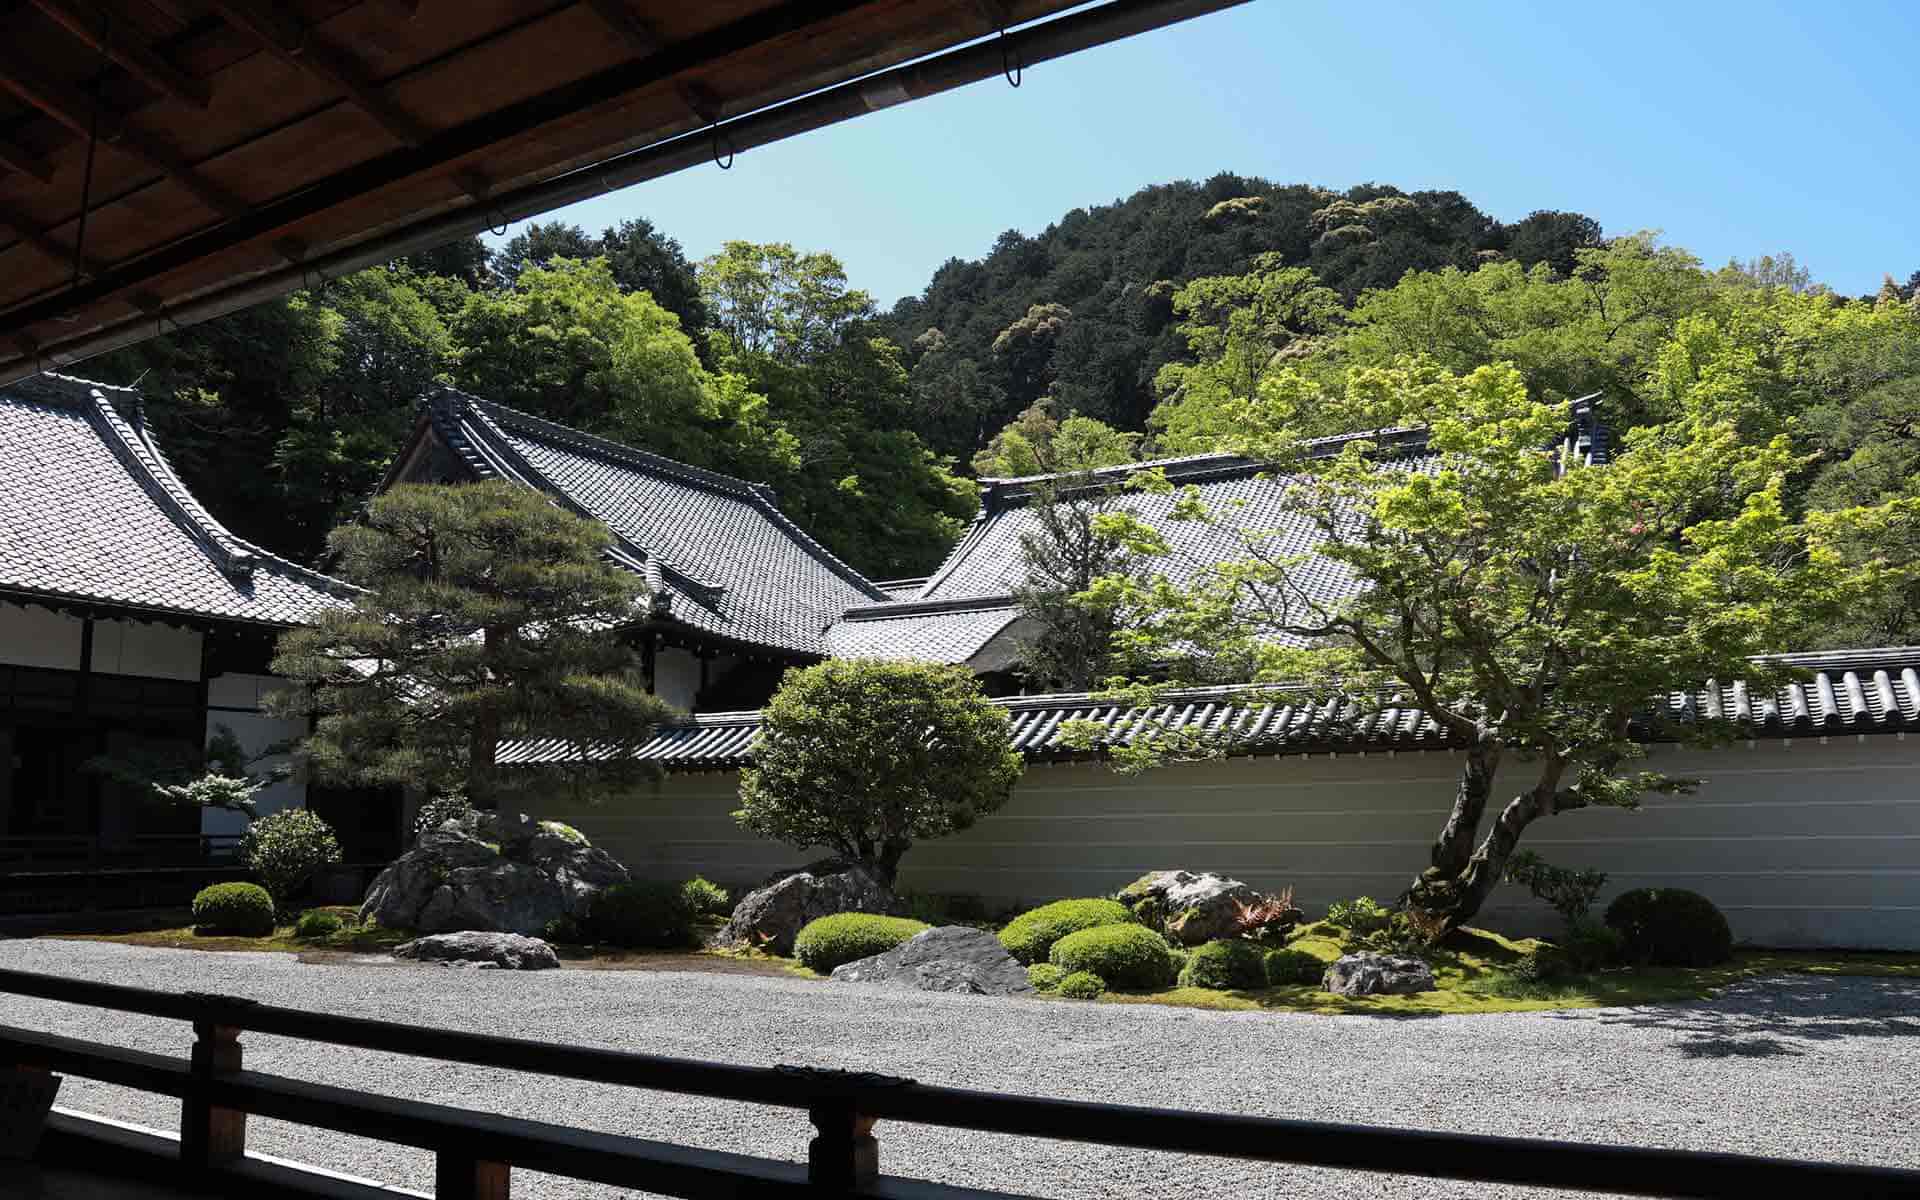 京都で「徒歩10分で400年」のタイムトリップ。庭を歩くと、南禅寺エリアはもっと楽しい